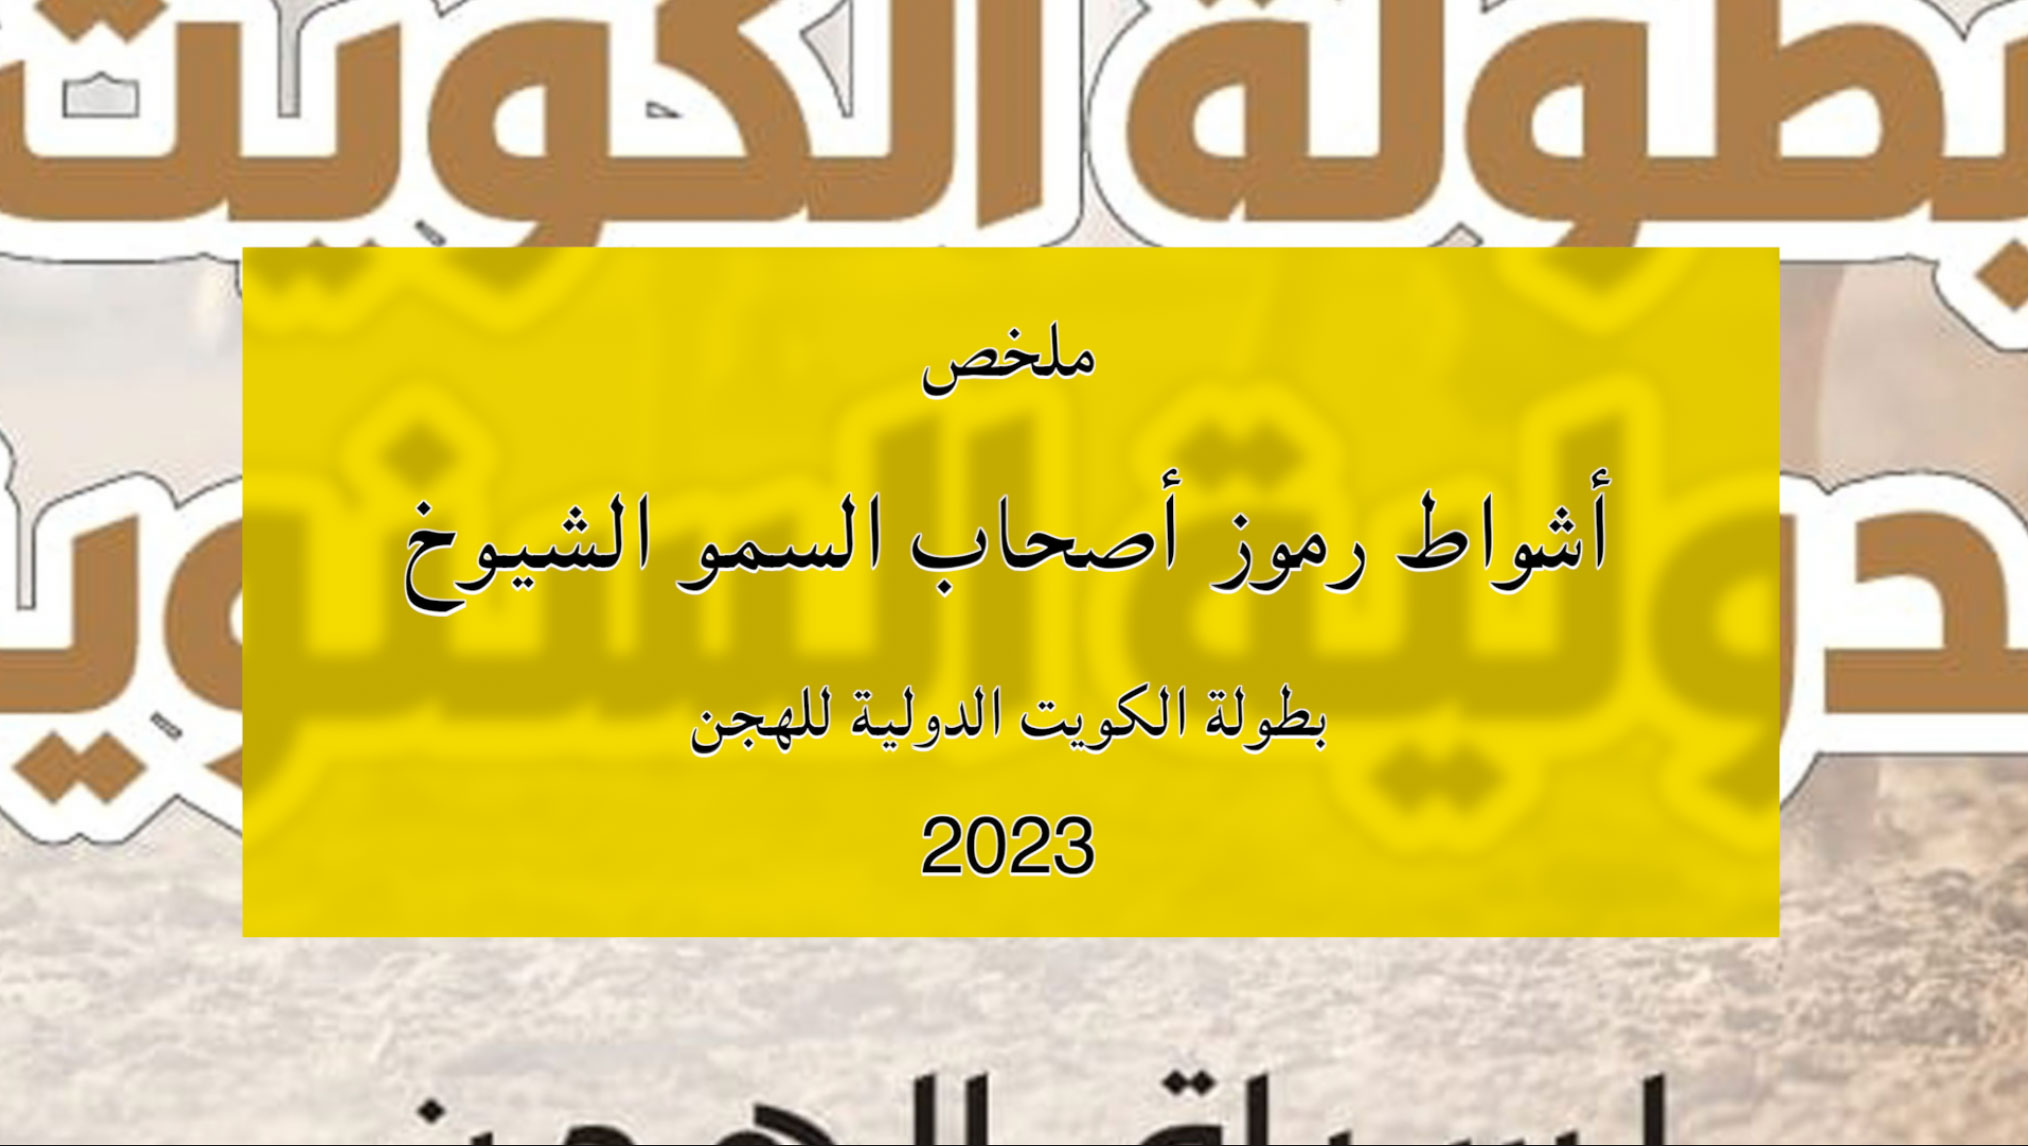 ملخص أشواط الرموز لأصحاب السمو الشيوخ ببطولة الكويت الدولية للهجن 2023